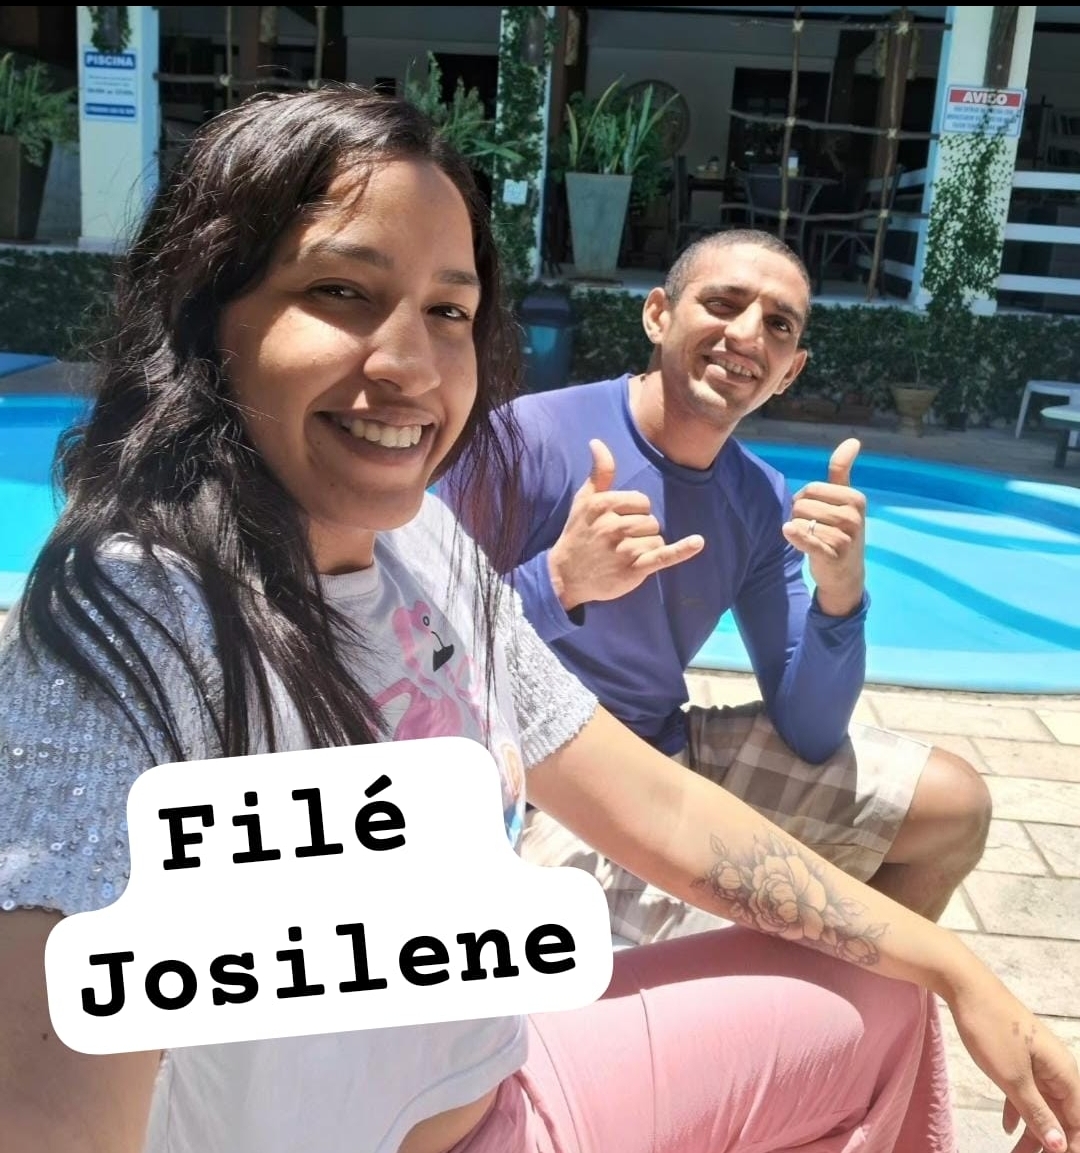 (Josilene e Filé - Imagem Arquivo CRN)